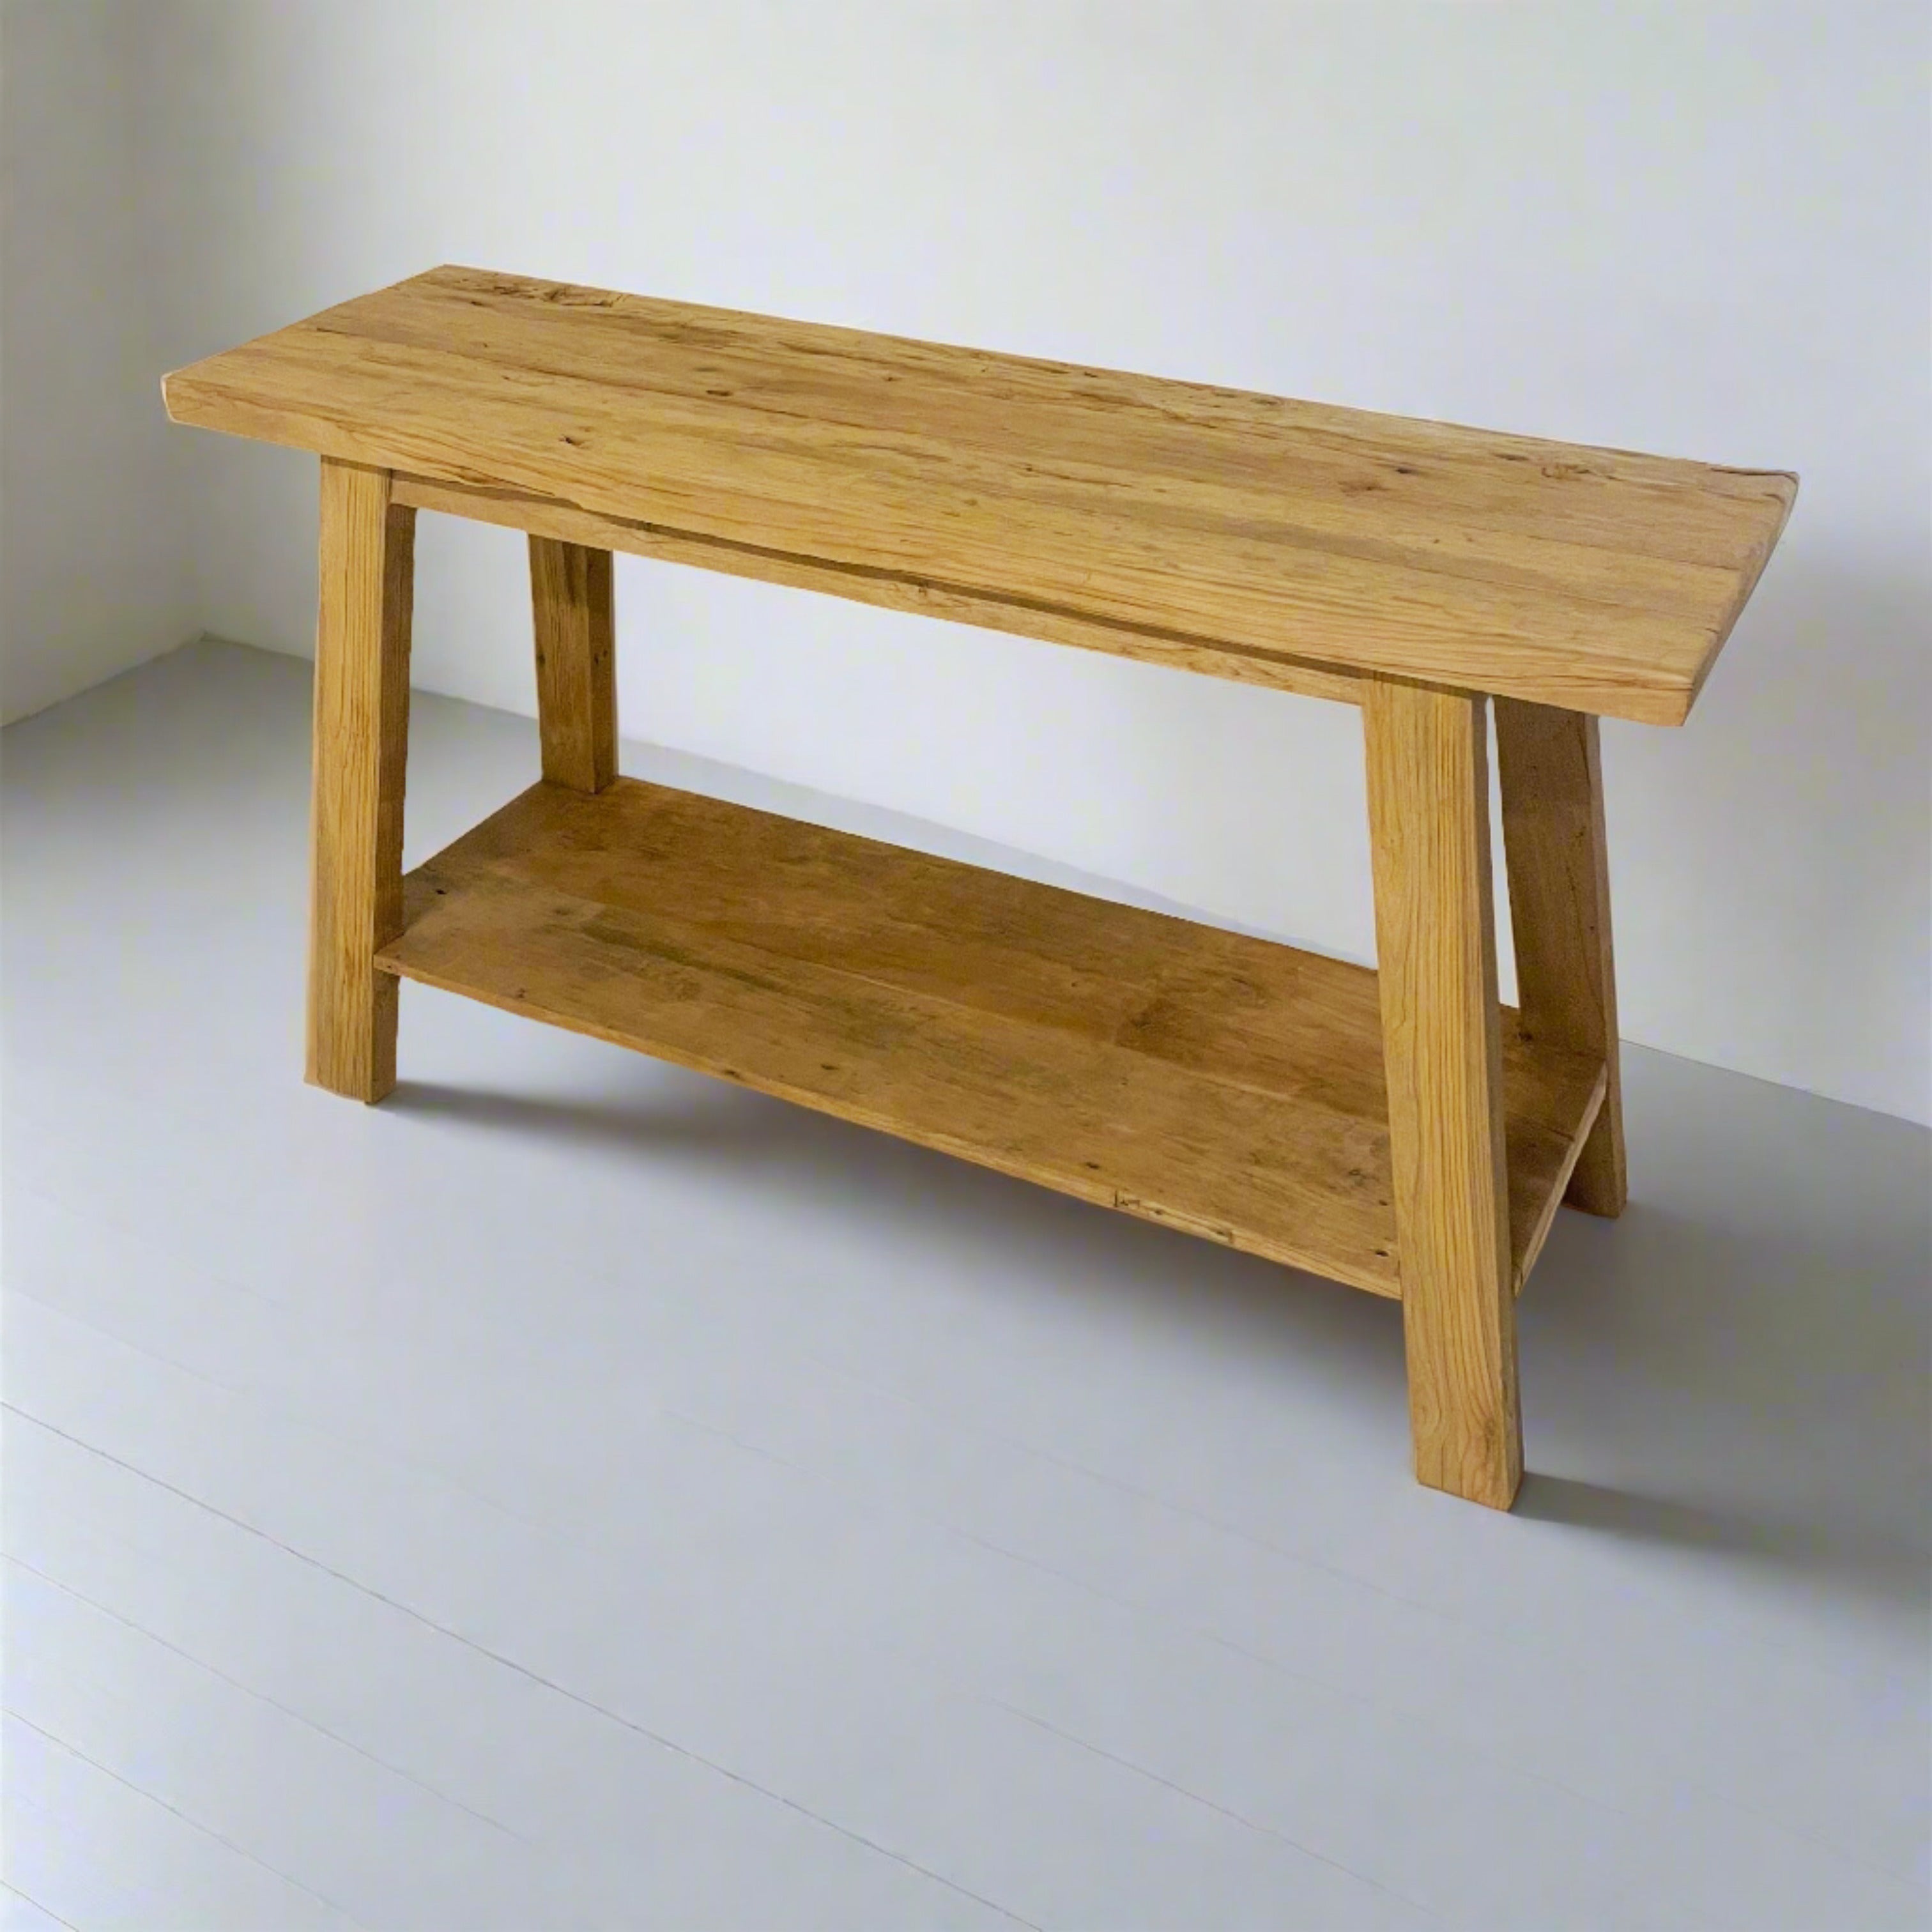 Rustic Teak Shelf Console Table 140cm